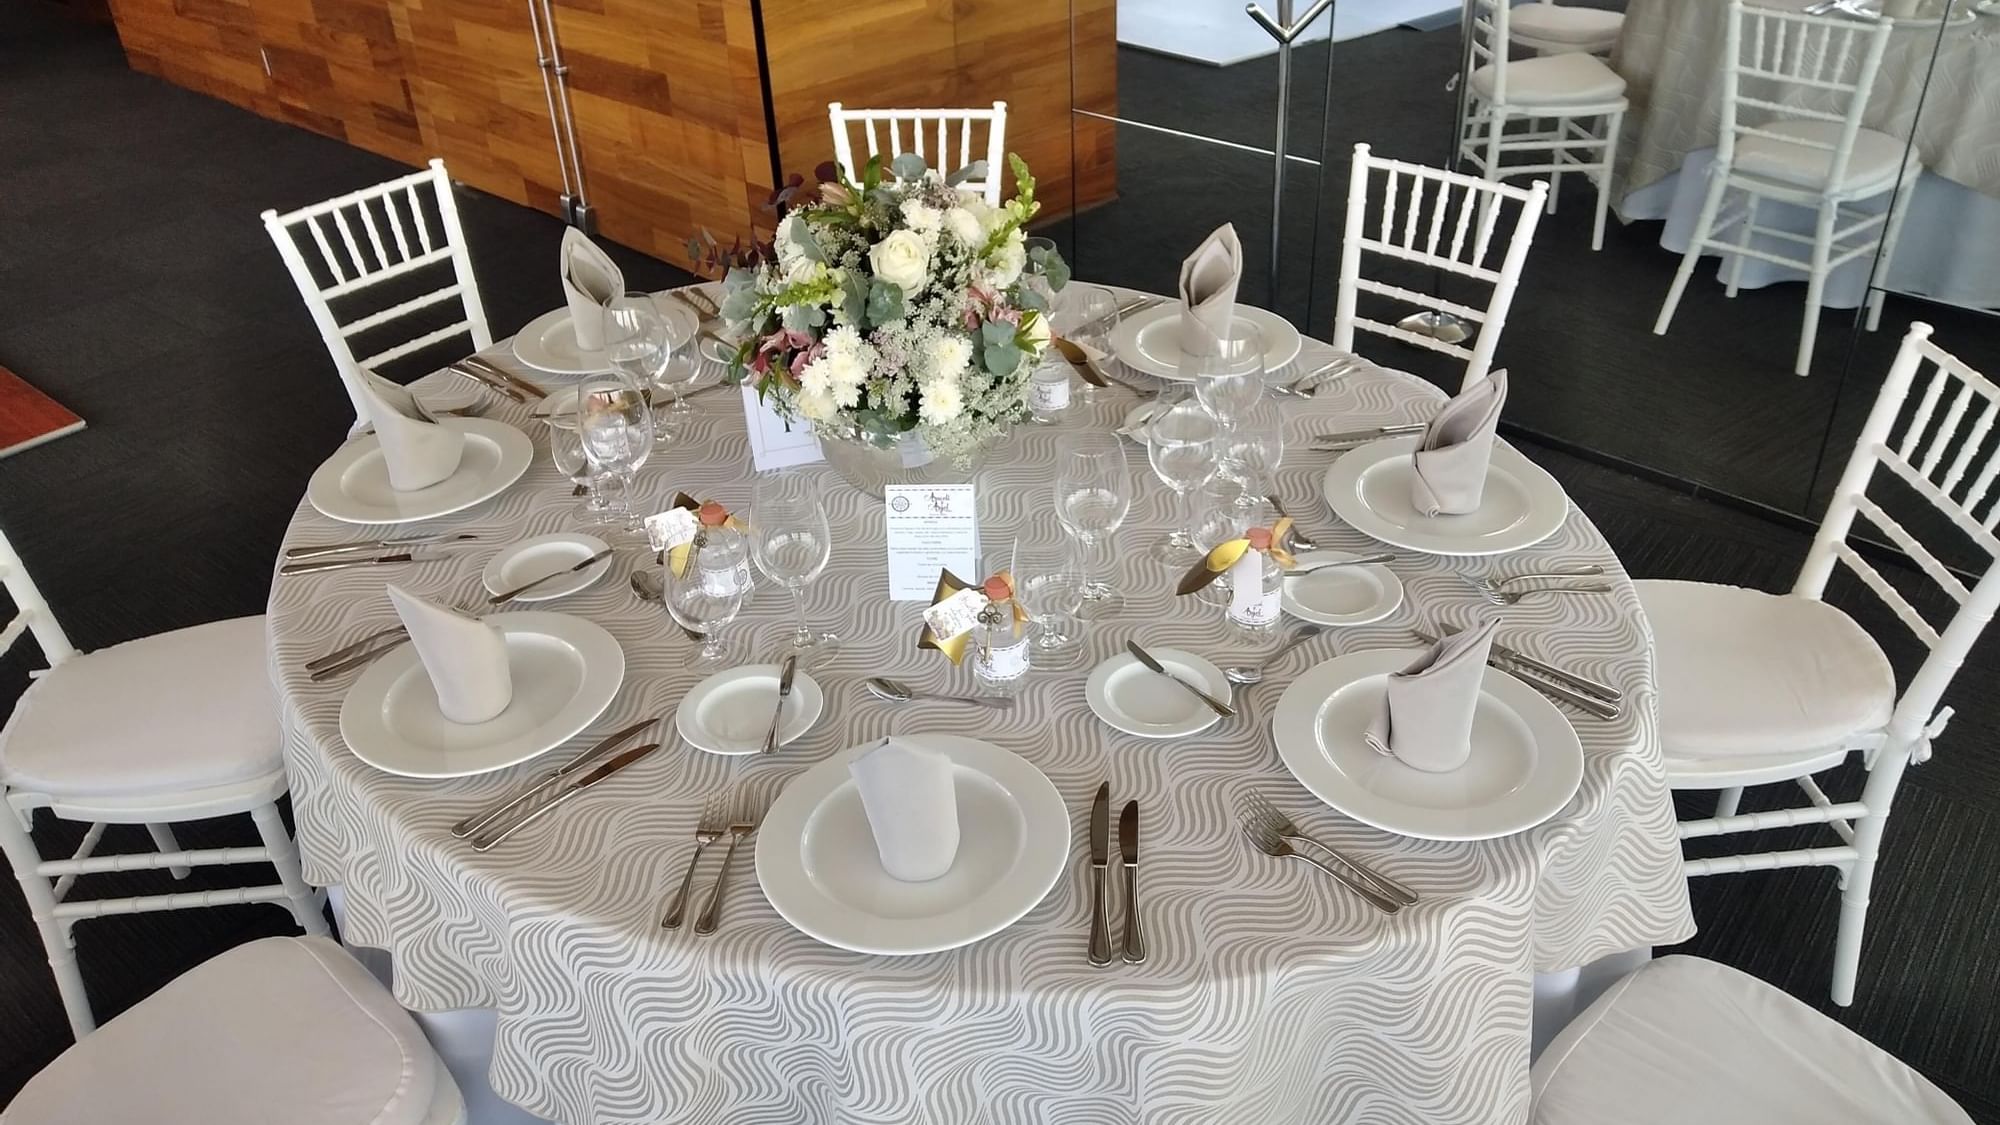 Banquet table arranged for a wedding at FA San Luis Potosí